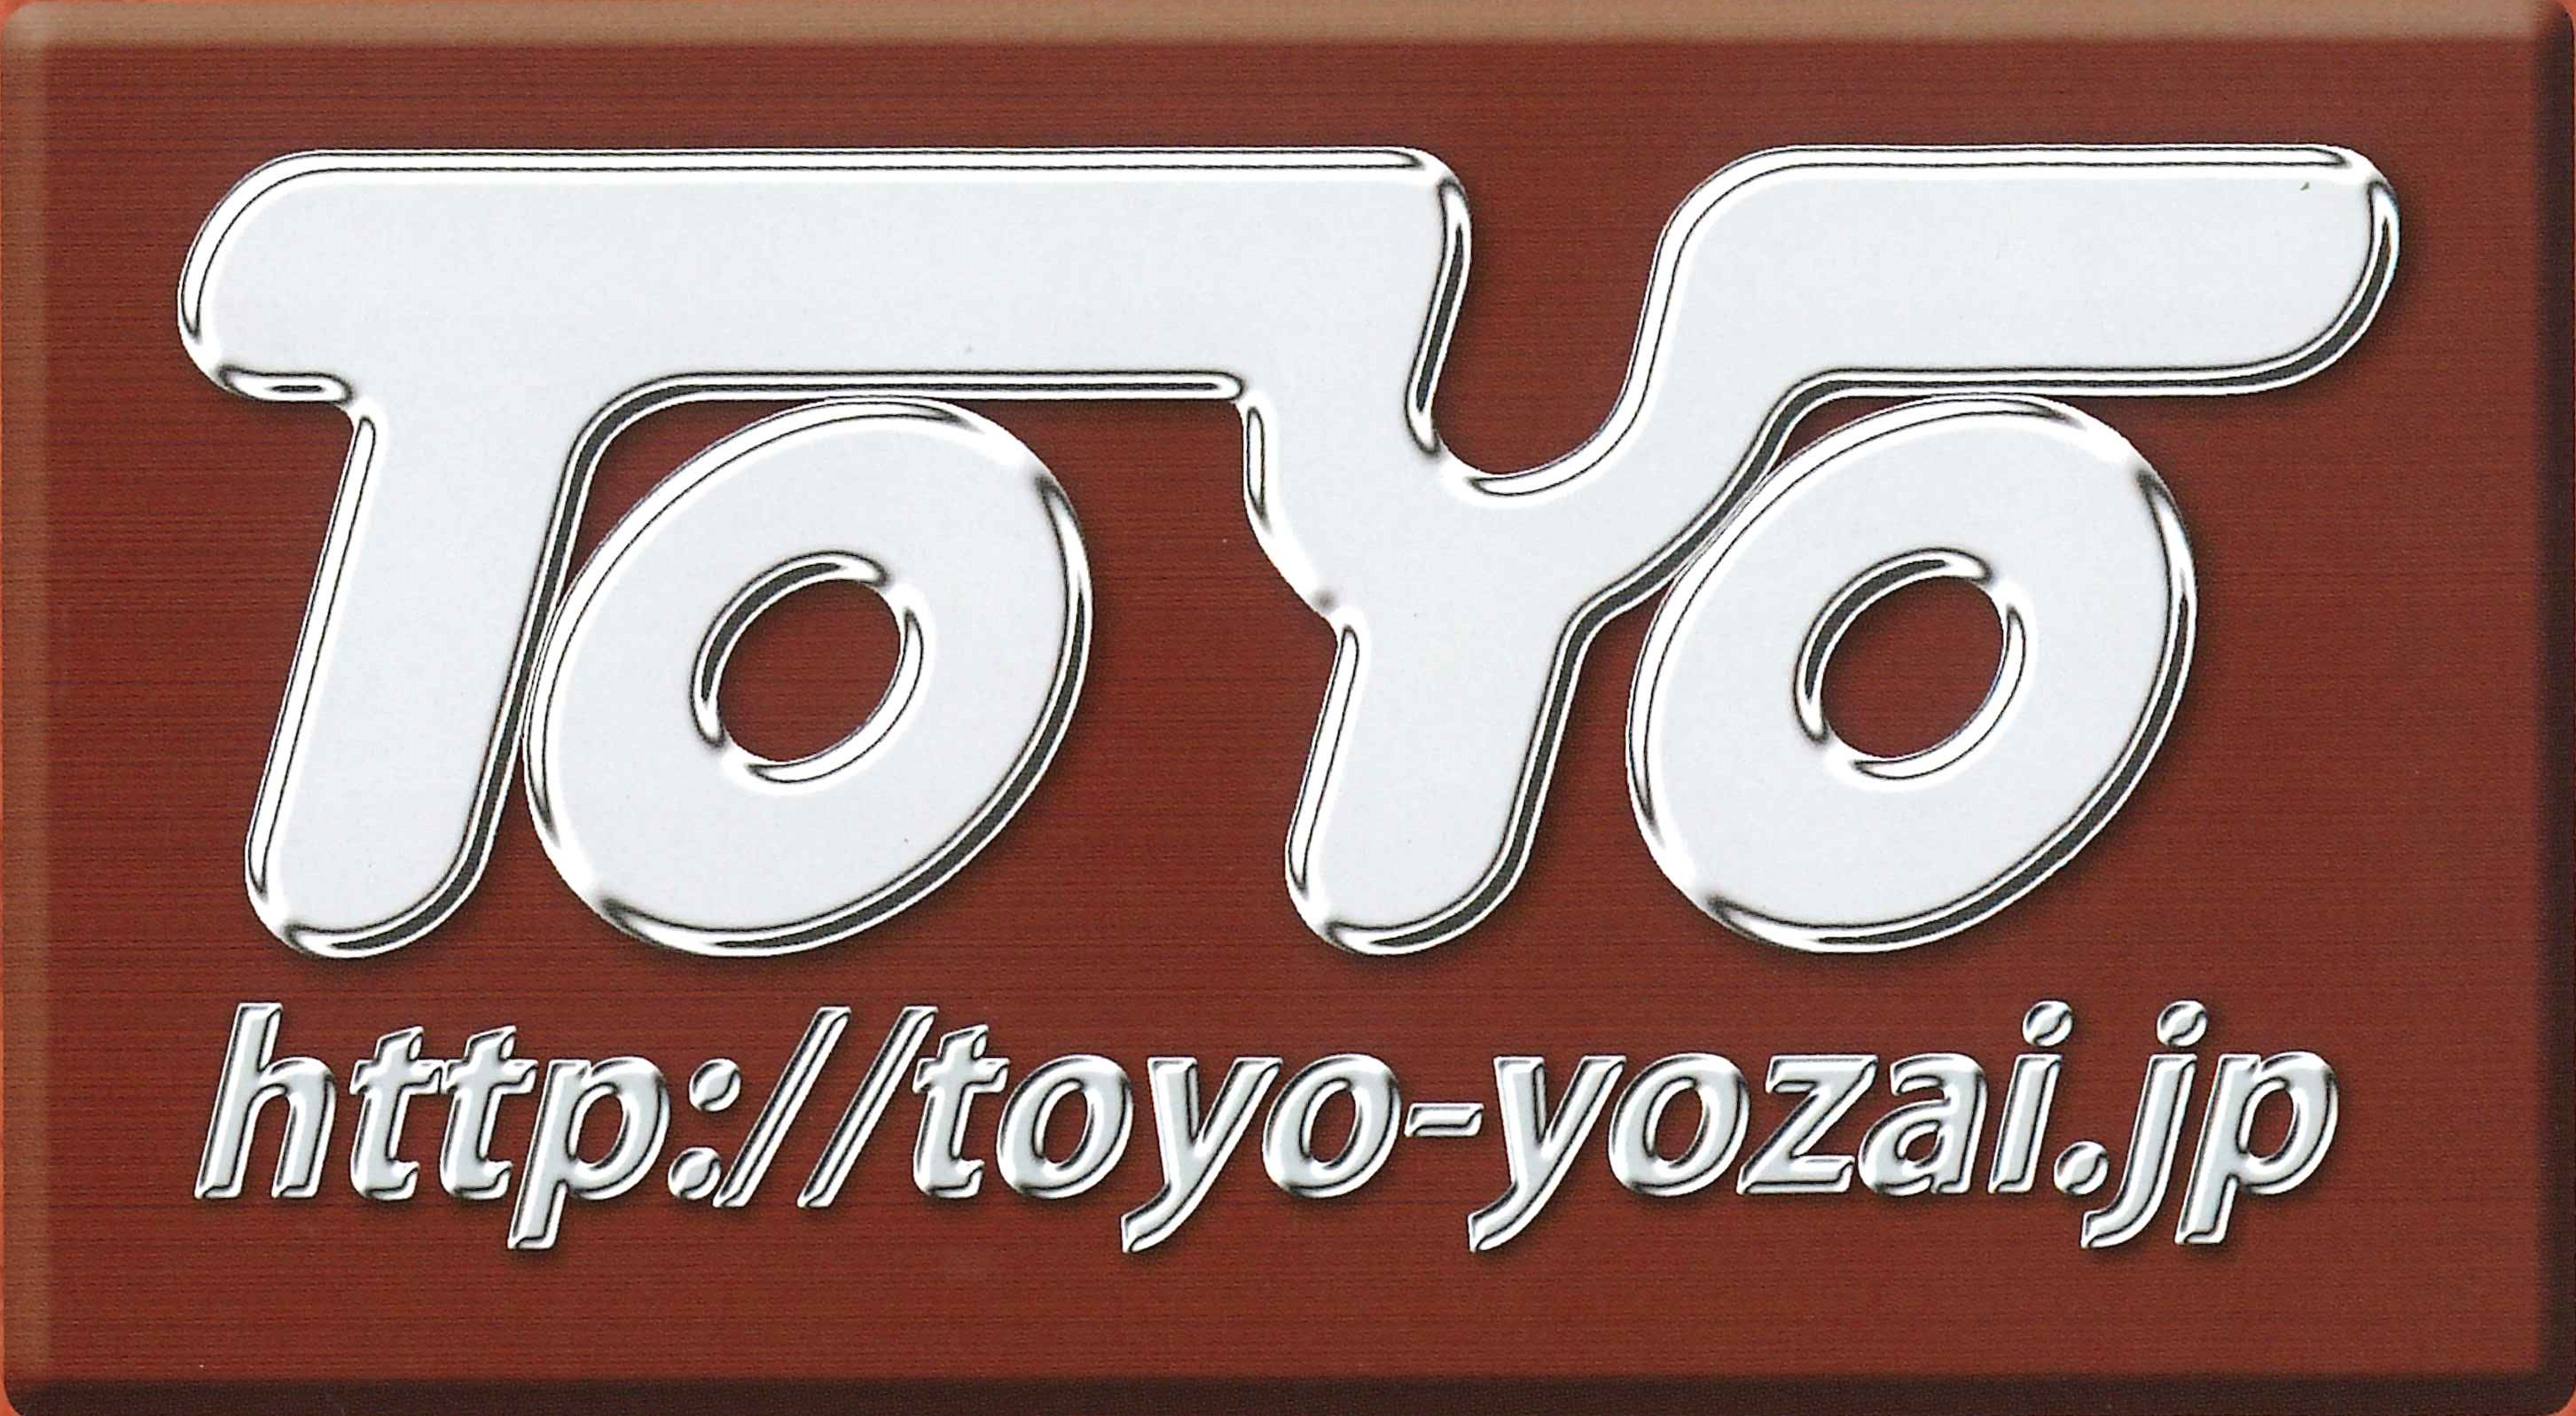 TOYO YOZAI Co.,Ltd